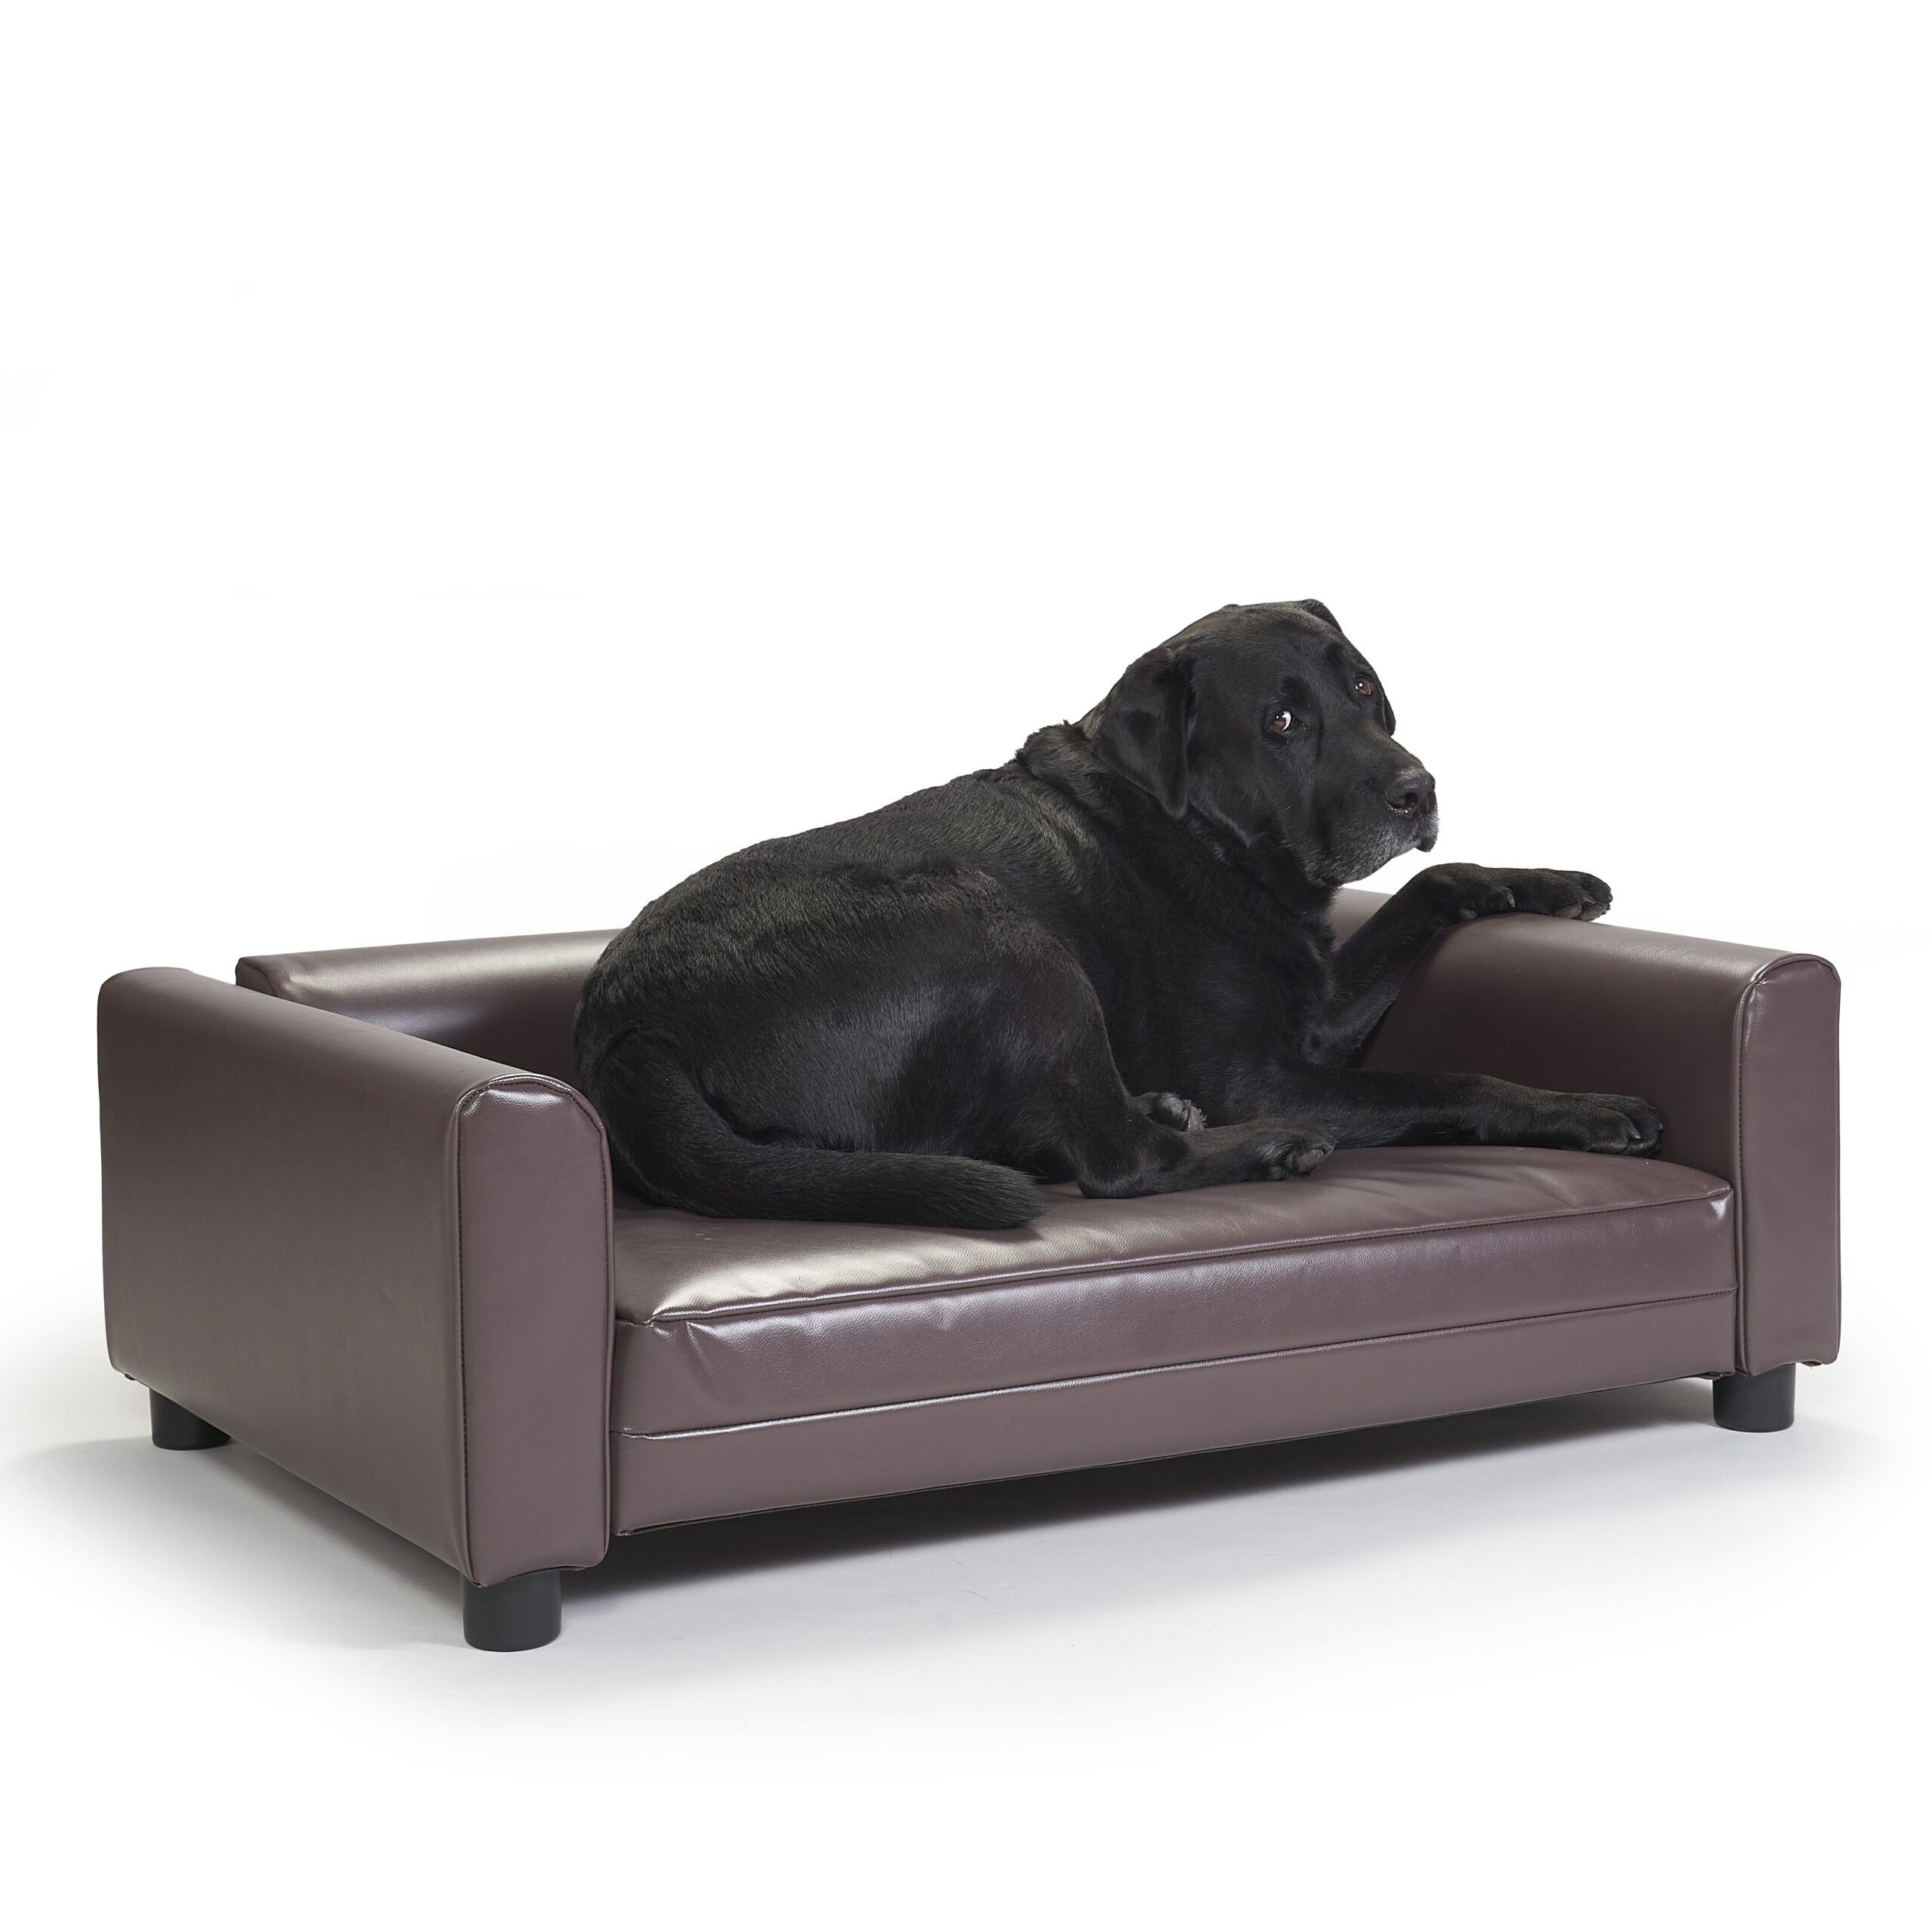 Black dog sitting on a brown dog bed